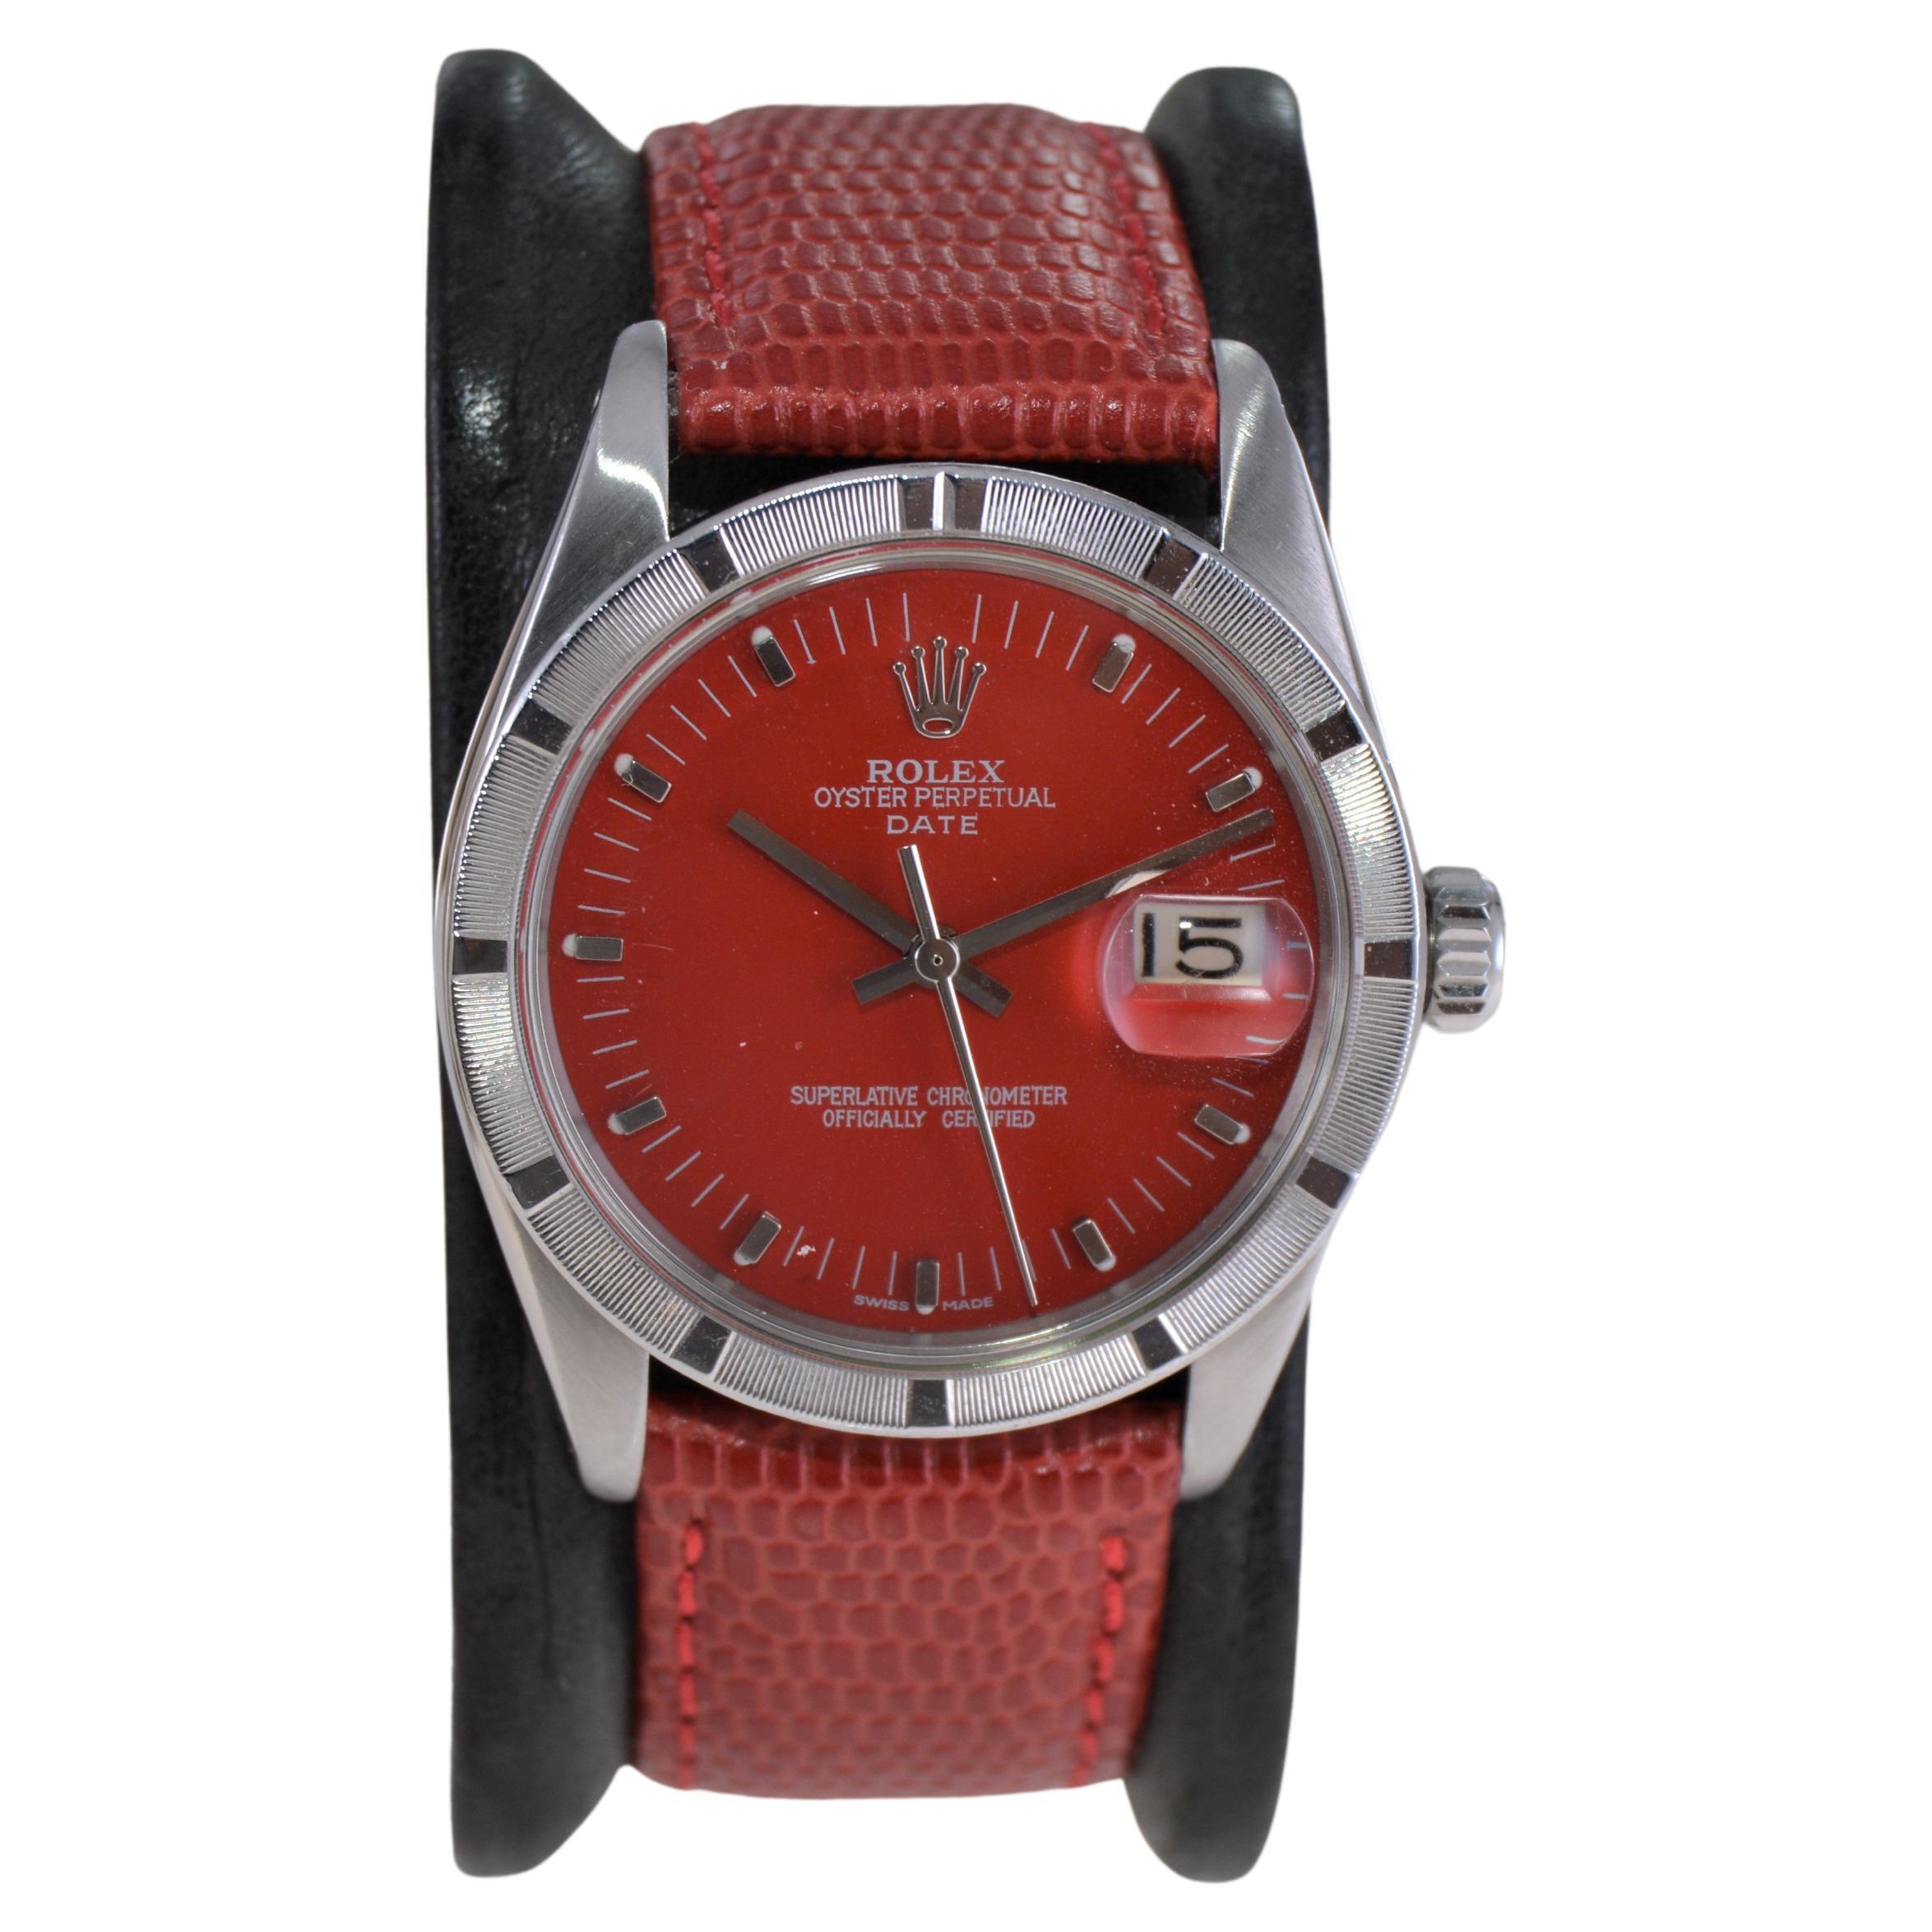 Rolex Montre Oyster Perpetual Date avec cadran rouge personnalisé, années 1960